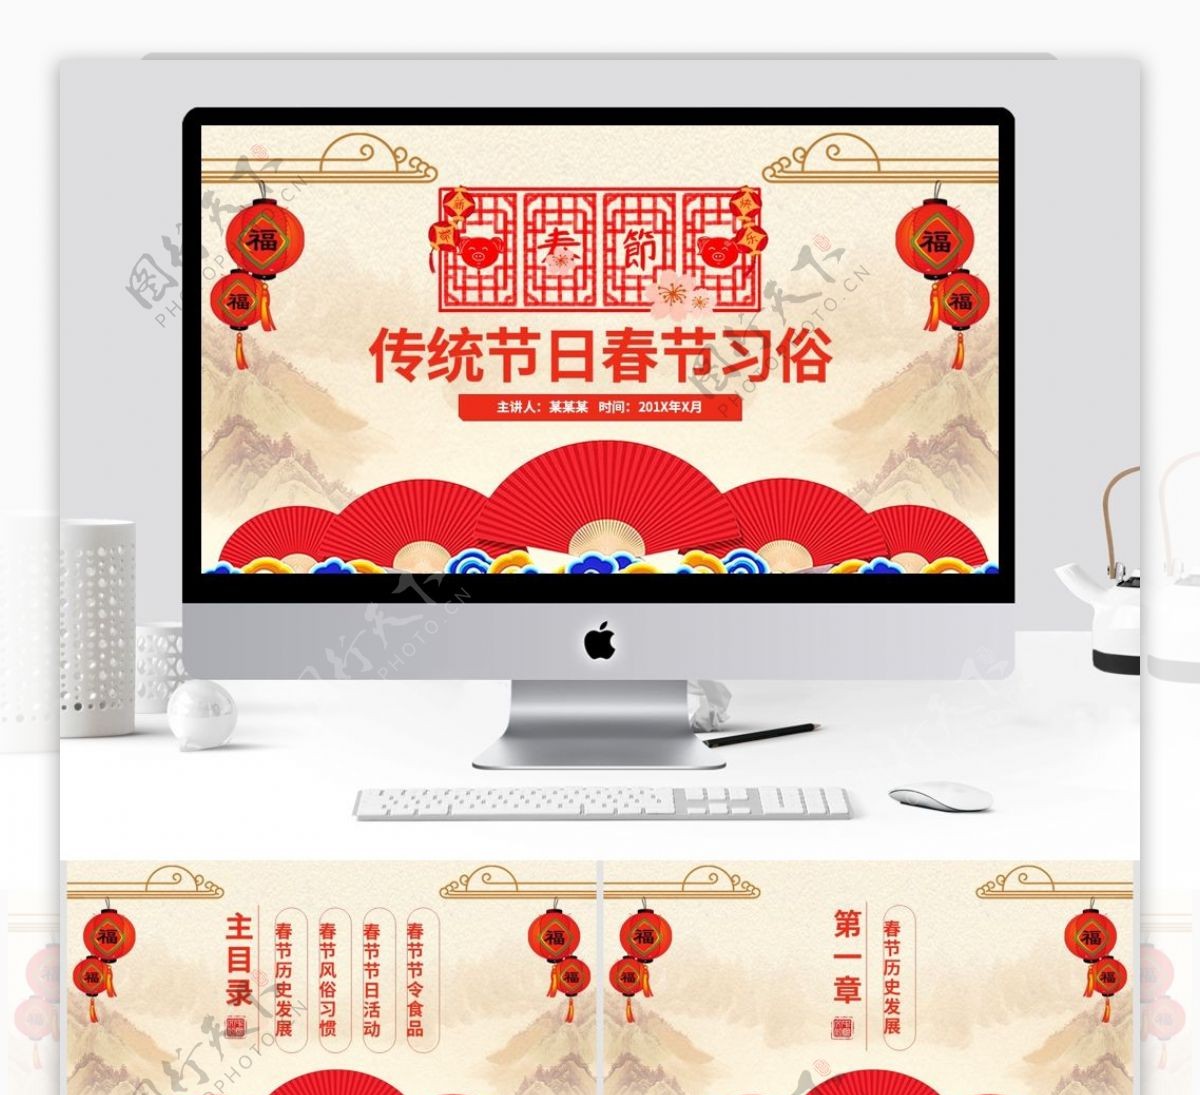 喜庆中国传统节日春节习俗文化PPT模板